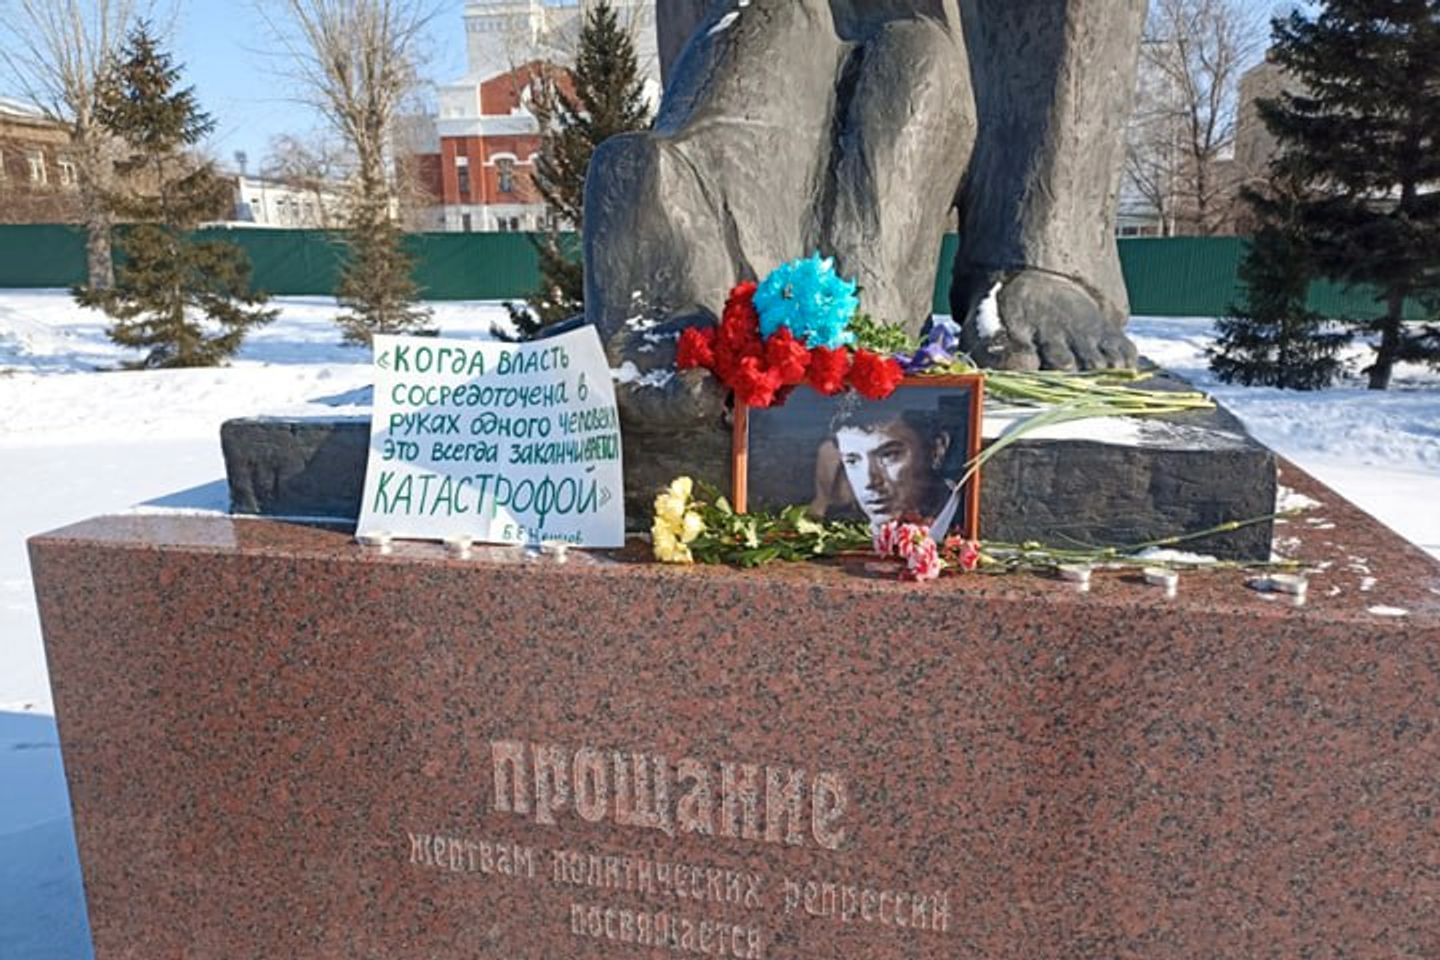 «В ту ночь я пообещал себе никуда не уезжать из России». В Москве и регионах проходят акции в честь Бориса Немцова, убитого 8 лет назад